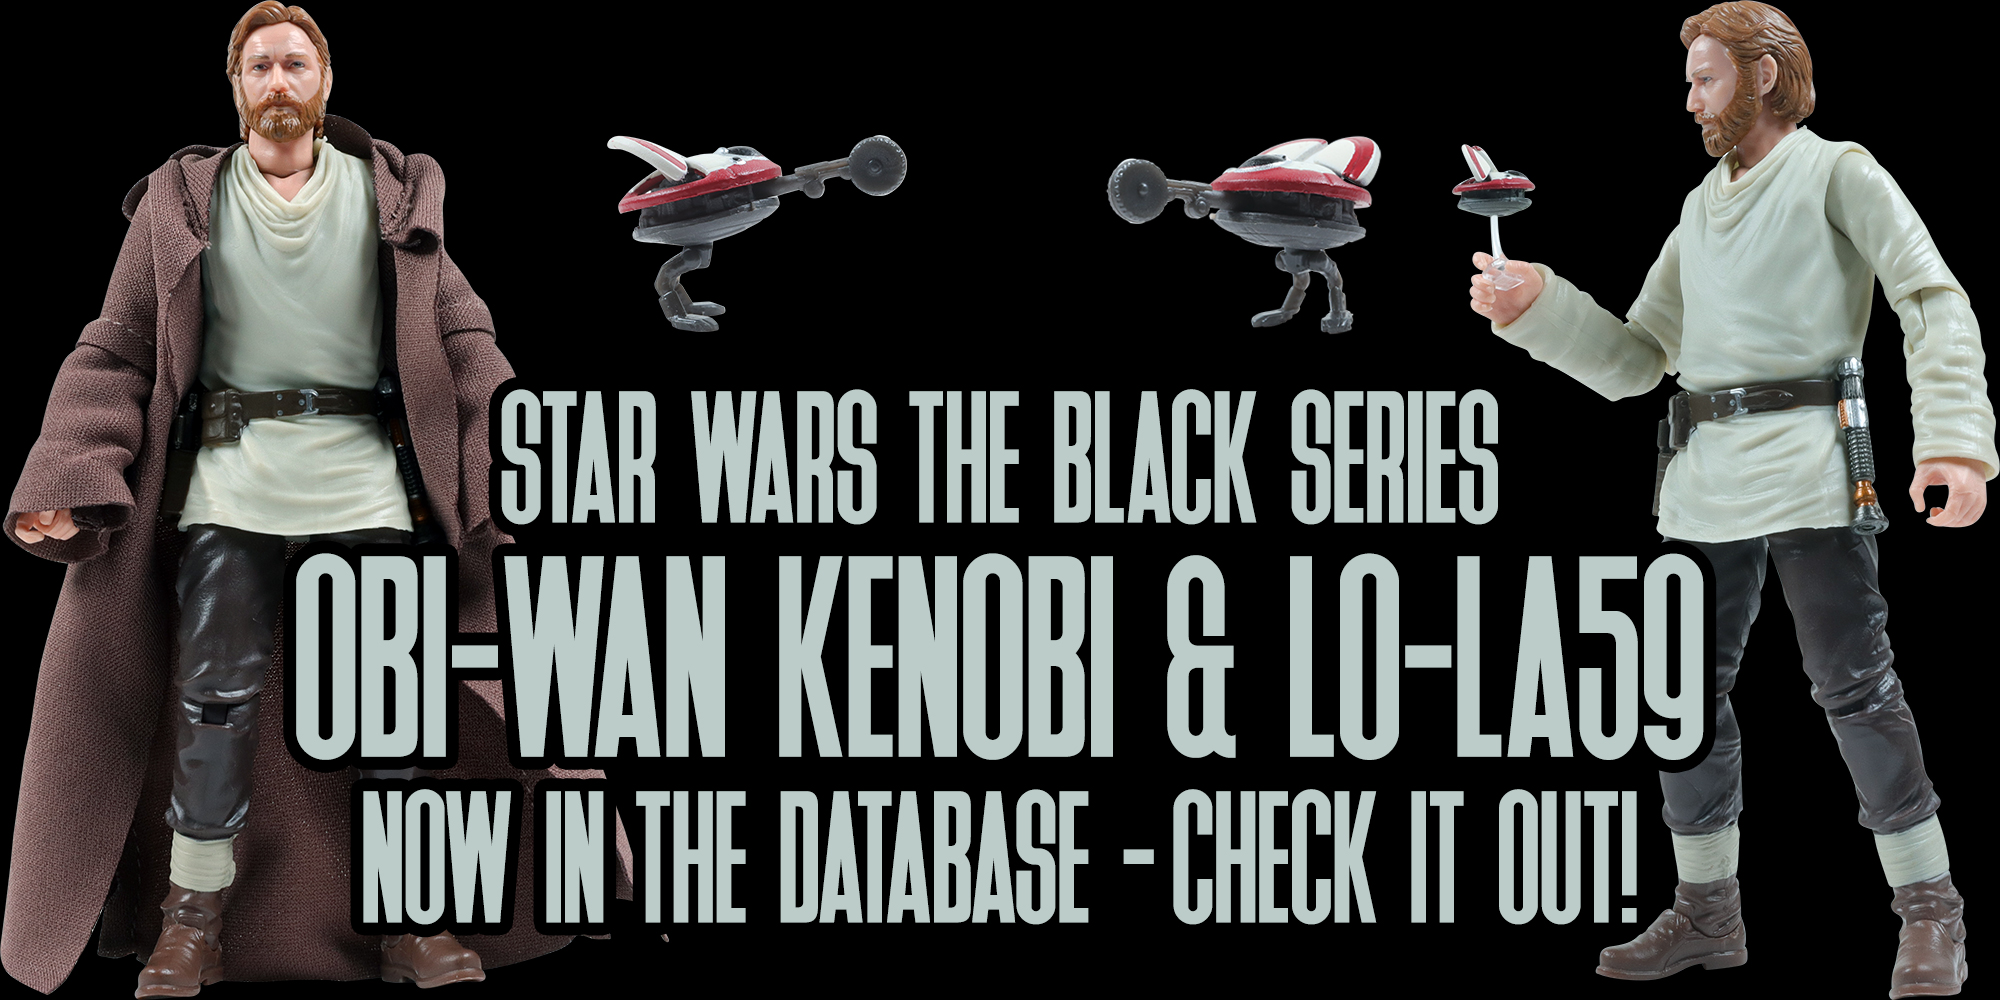 Black Series Obi-Wan Kenobi & L0-LA59 Added